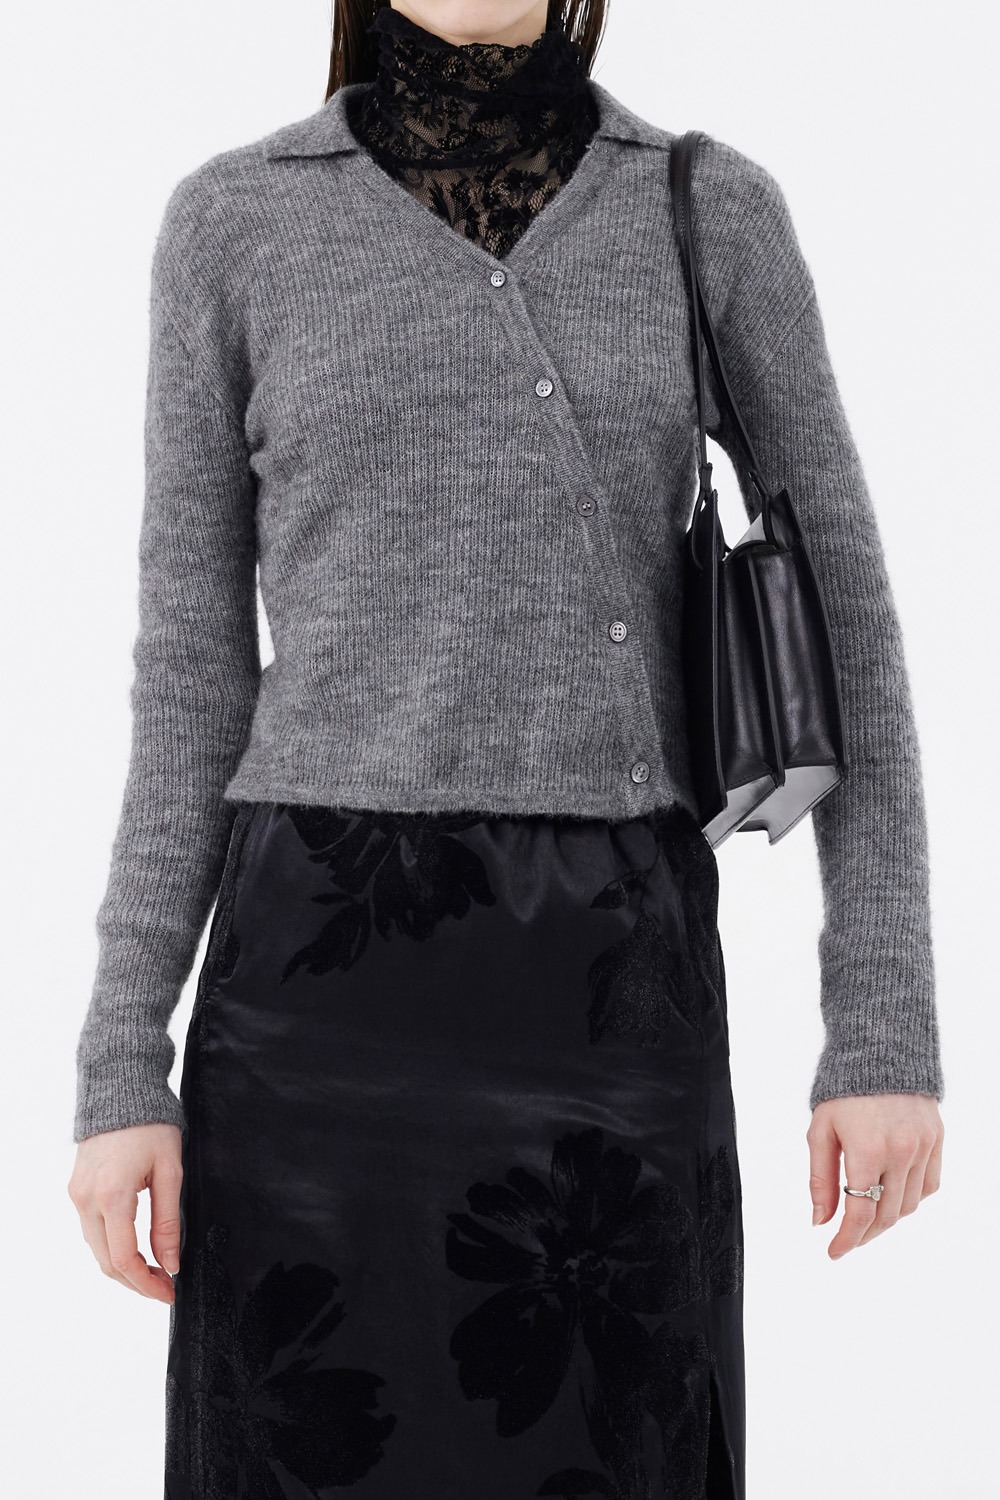 Asymmetric Knit Shirt - Melange Charcoal Grey